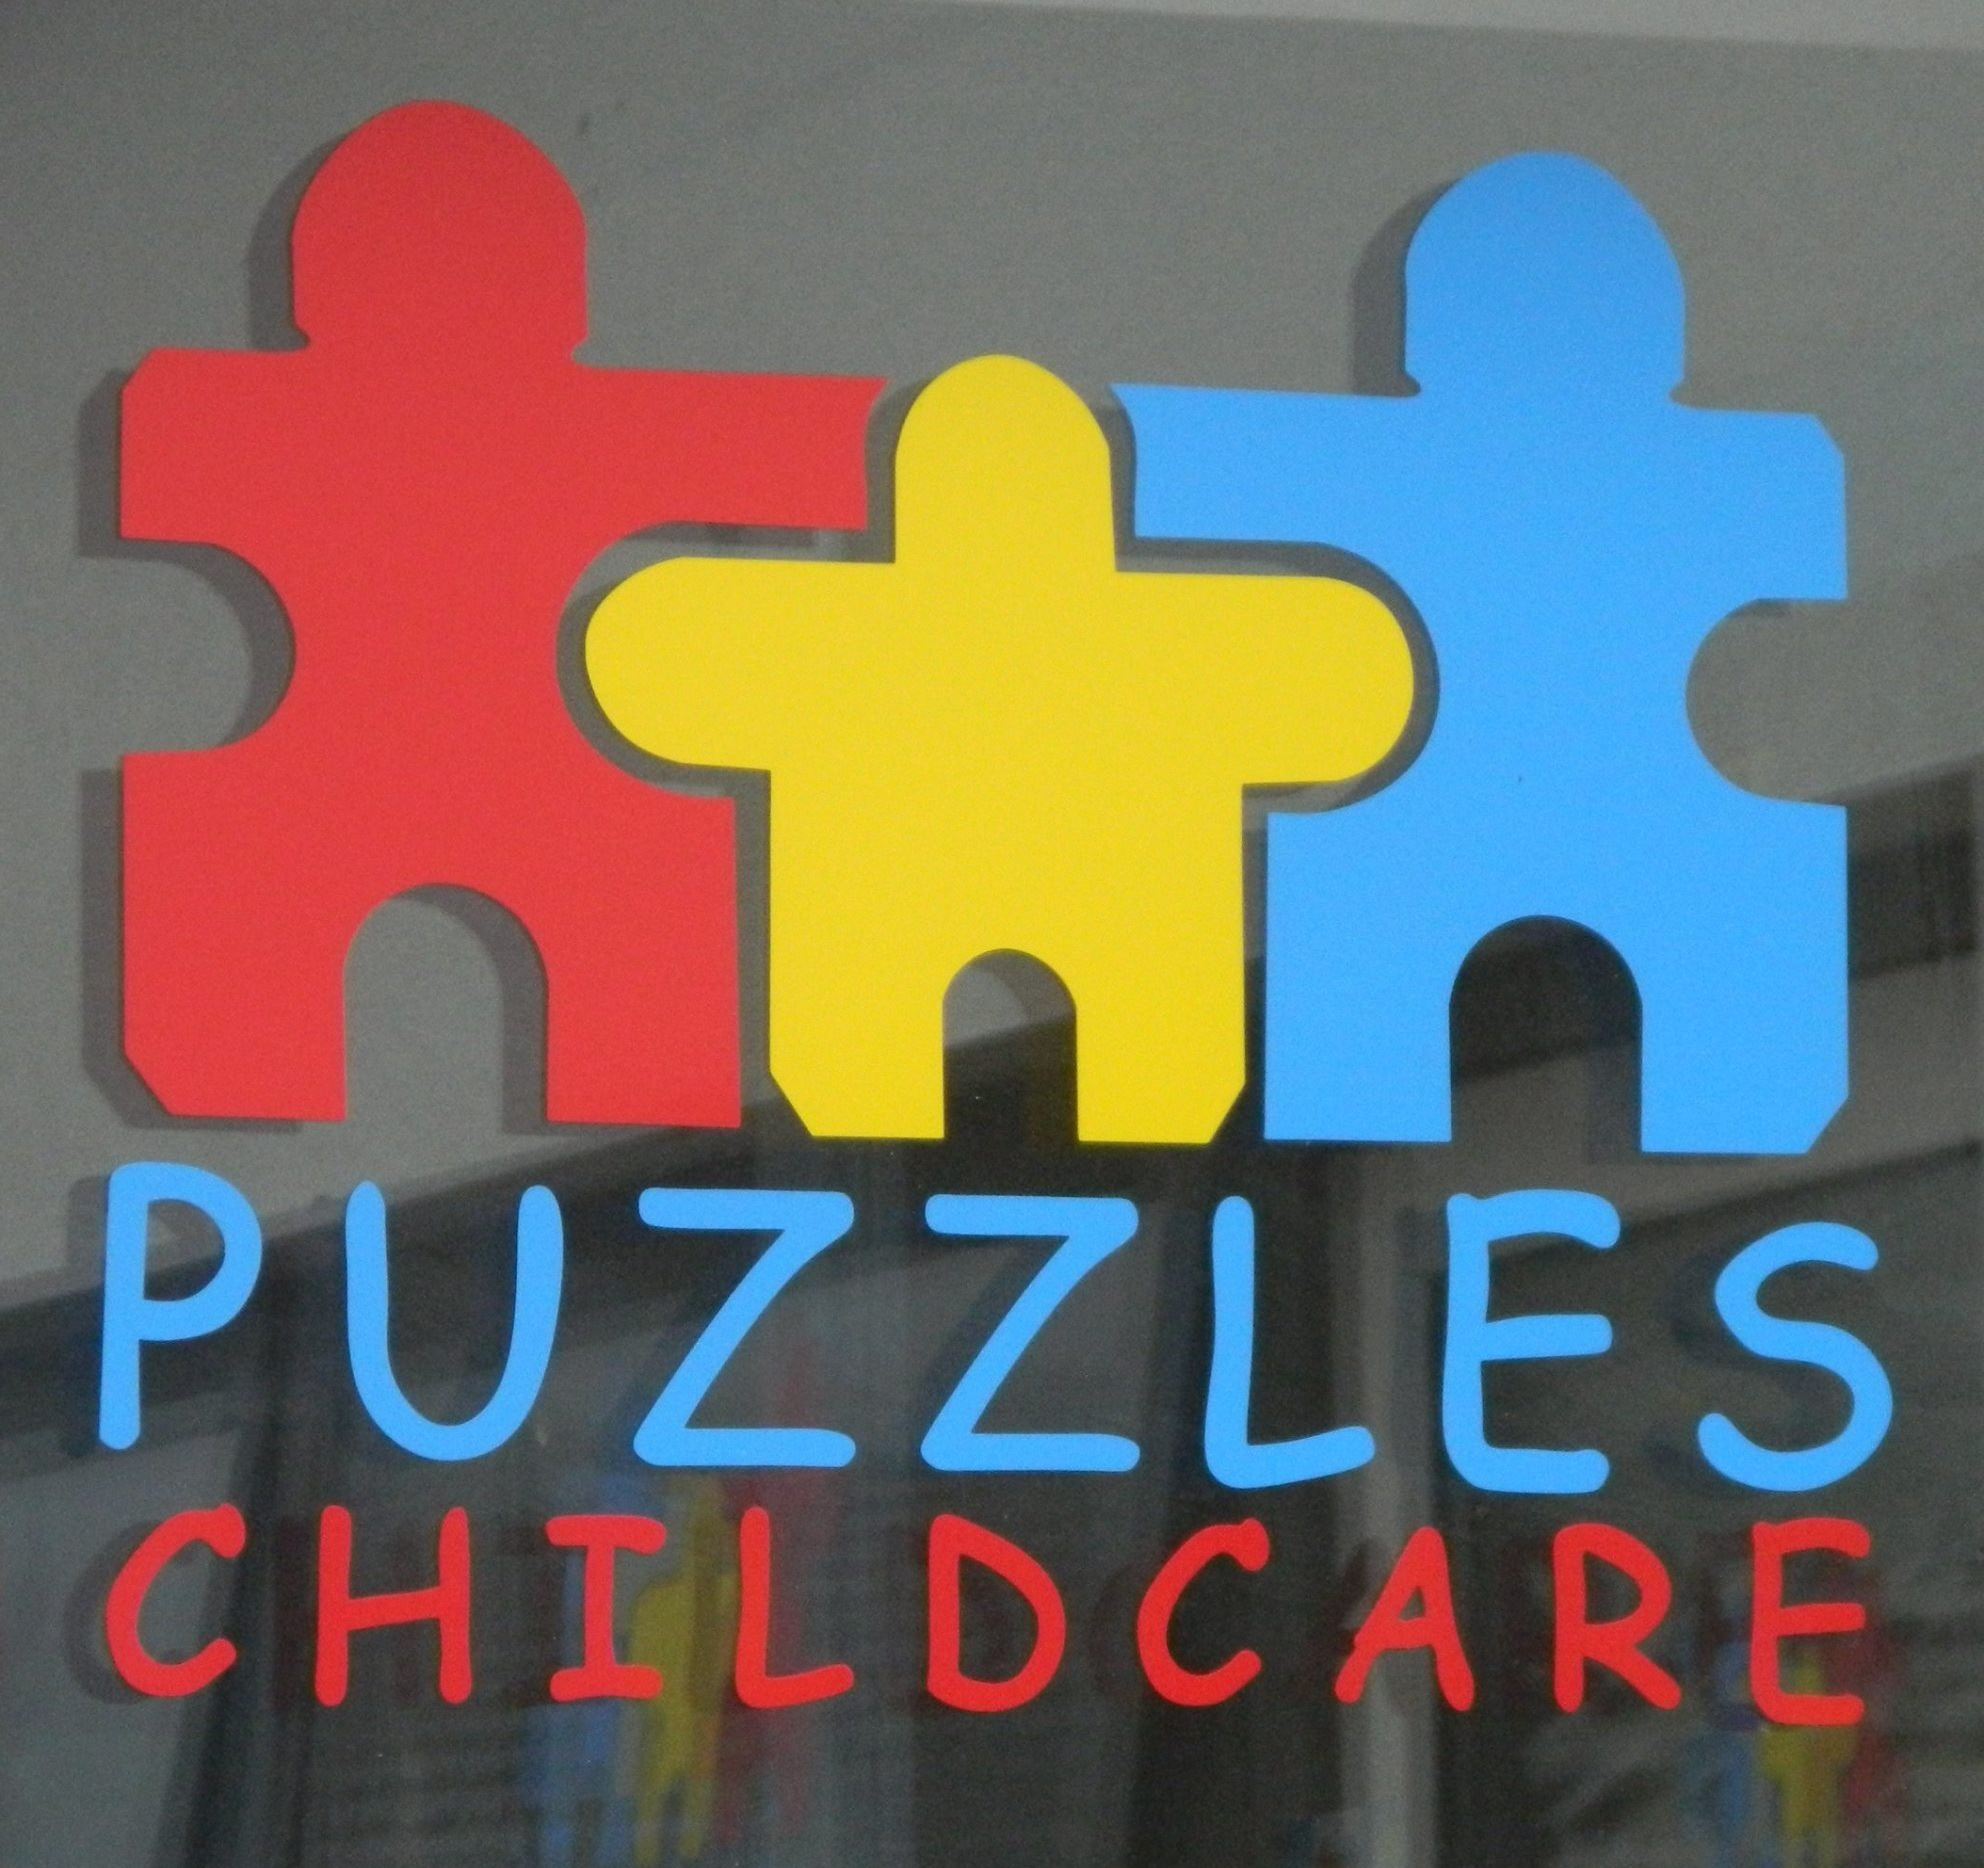 Puzzles Childcare